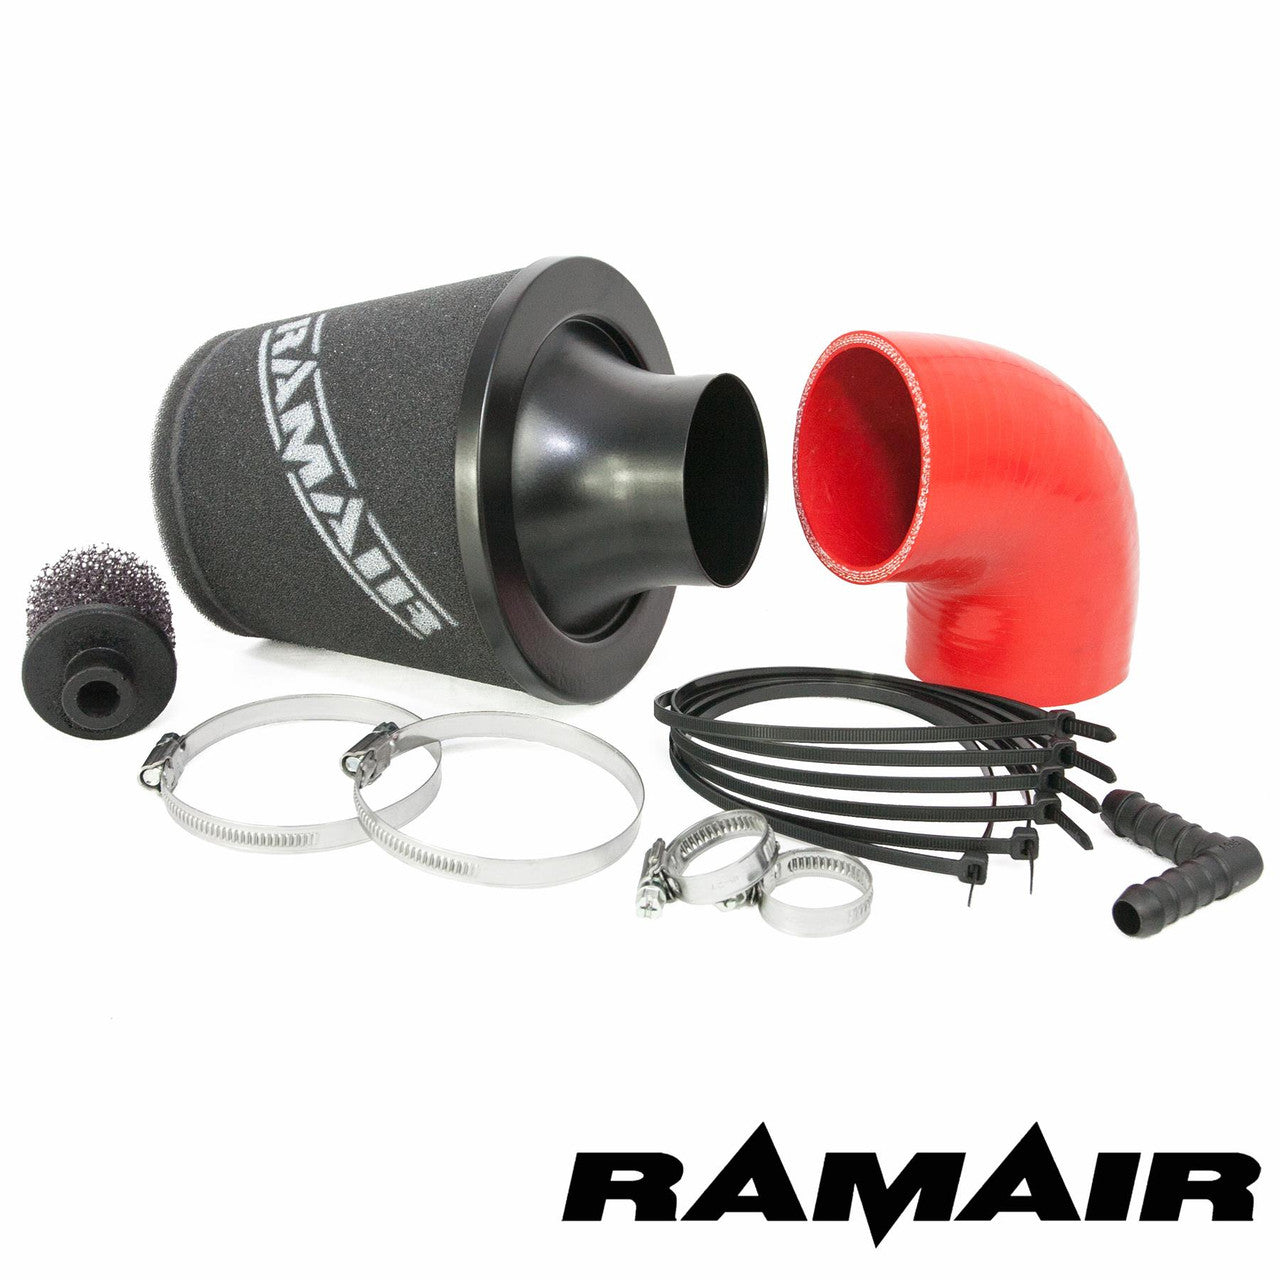 Ramair red Intake Intake Foam Air Filter Kit for Ford Fiesta ST 150 (2.0l)